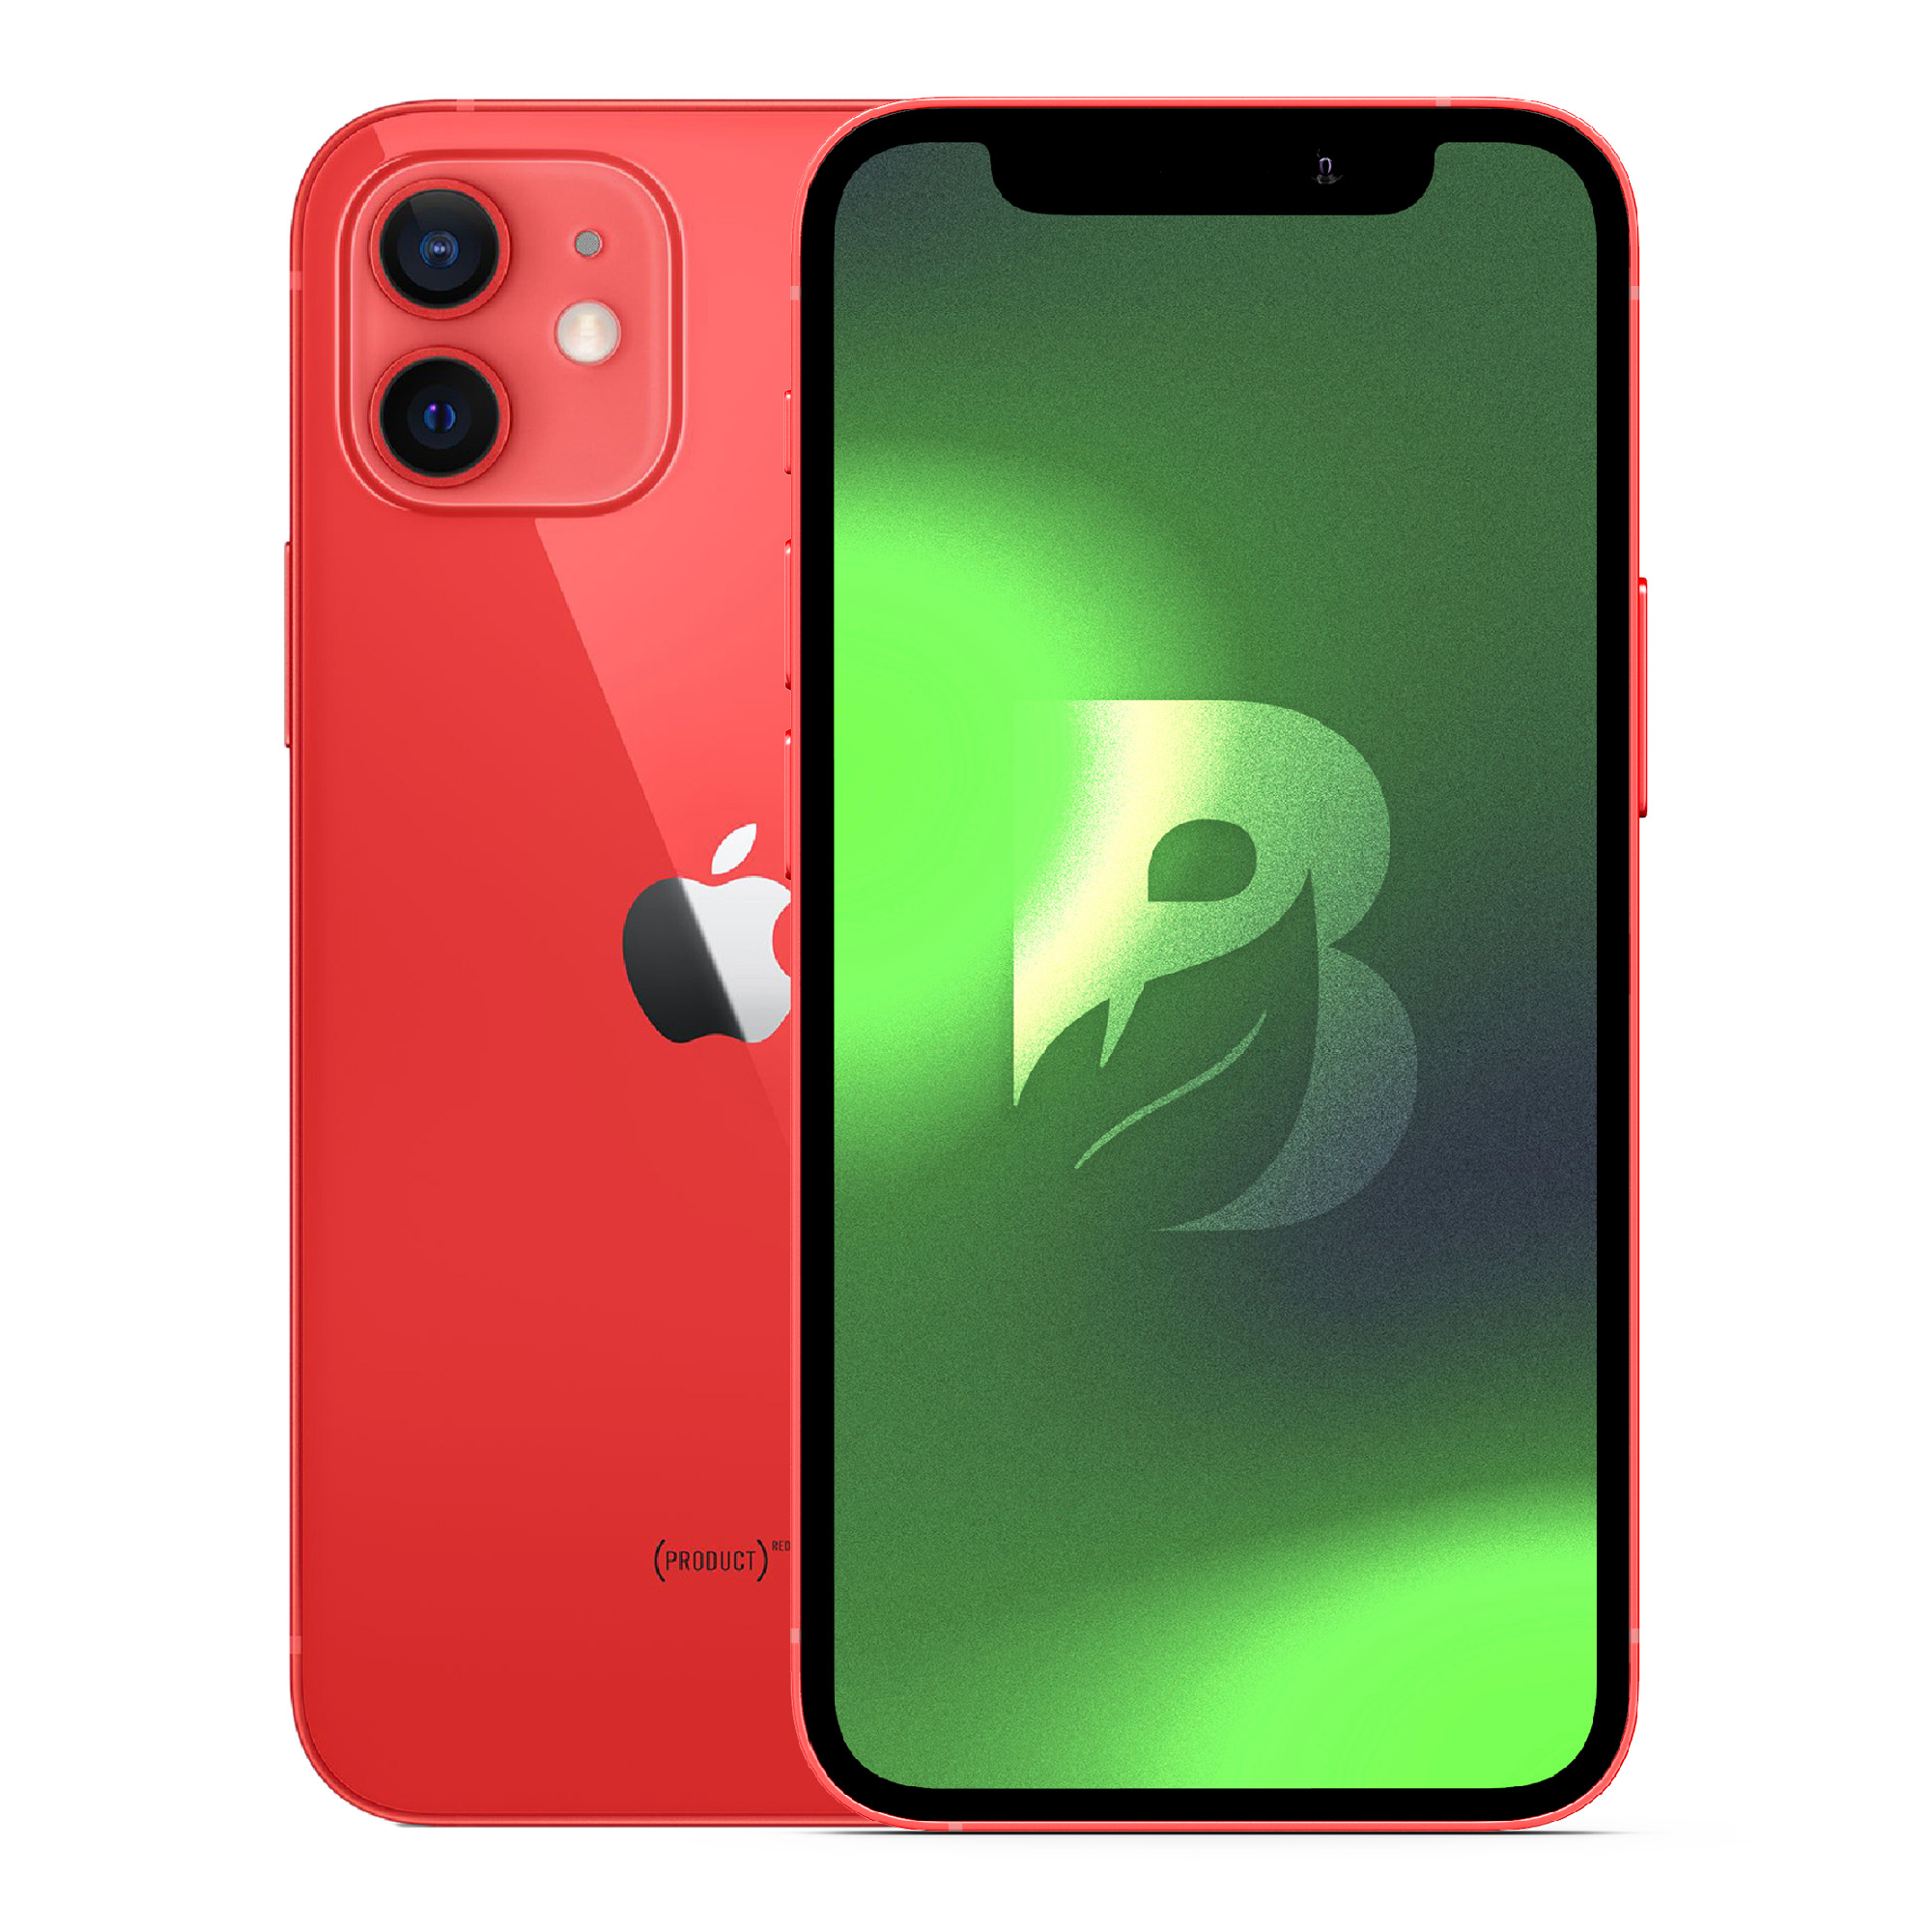 Apple iPhone 11, 64GB, (PRODUCT) Red (Reacondicionado) 